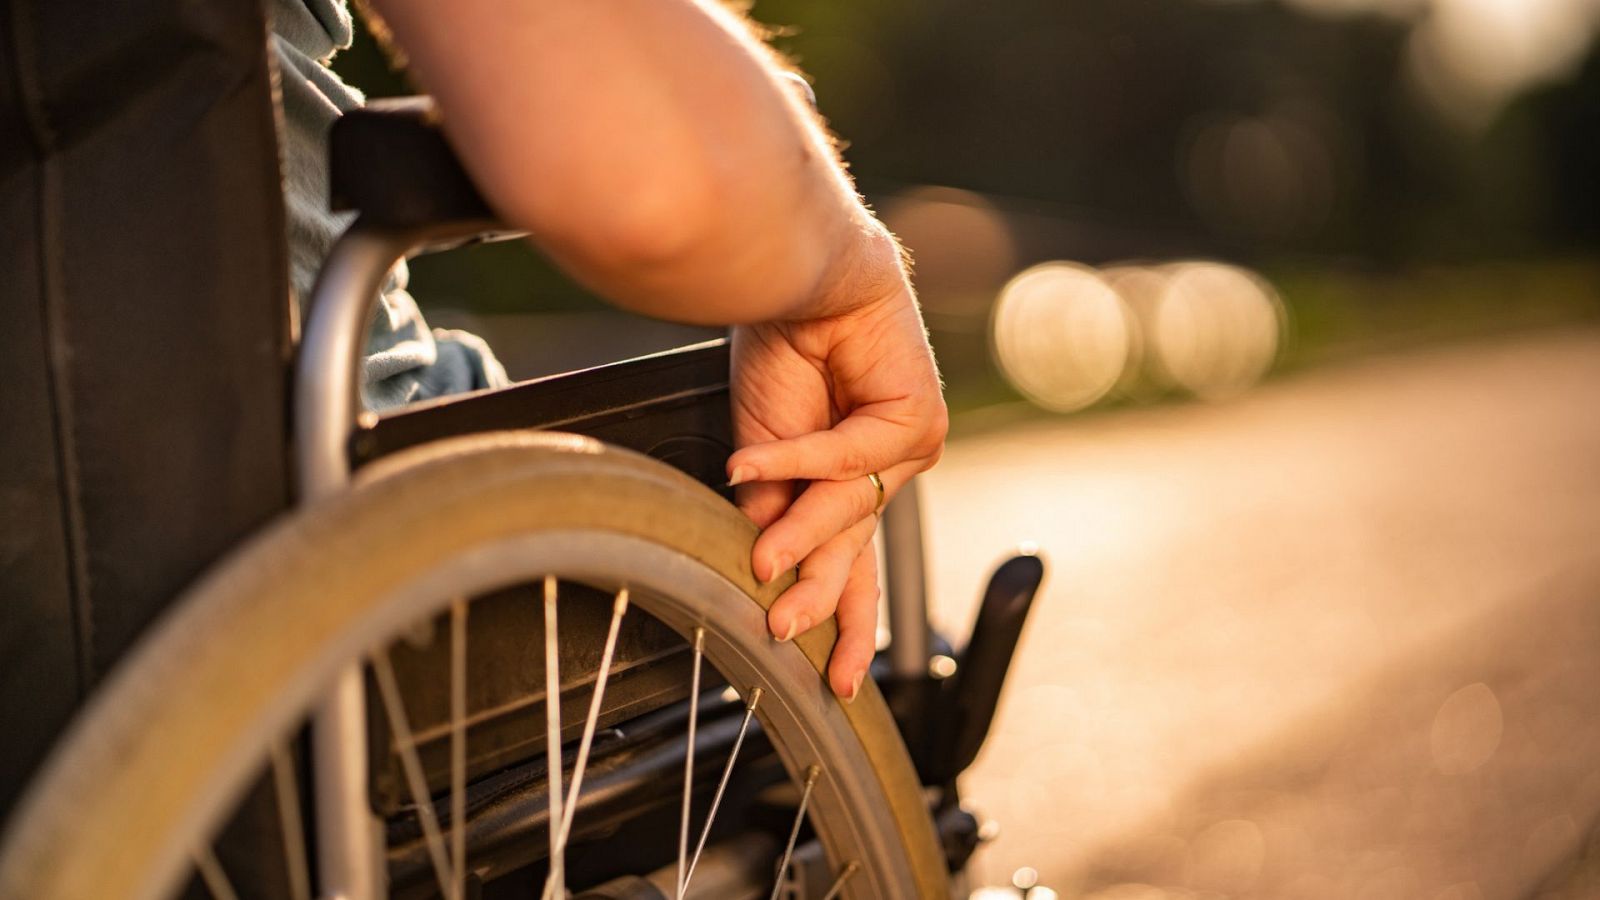 "Voy en silla de ruedas, no soy invisible", un fenómeno viral por sus vídeos de denuncia - Ver ahora